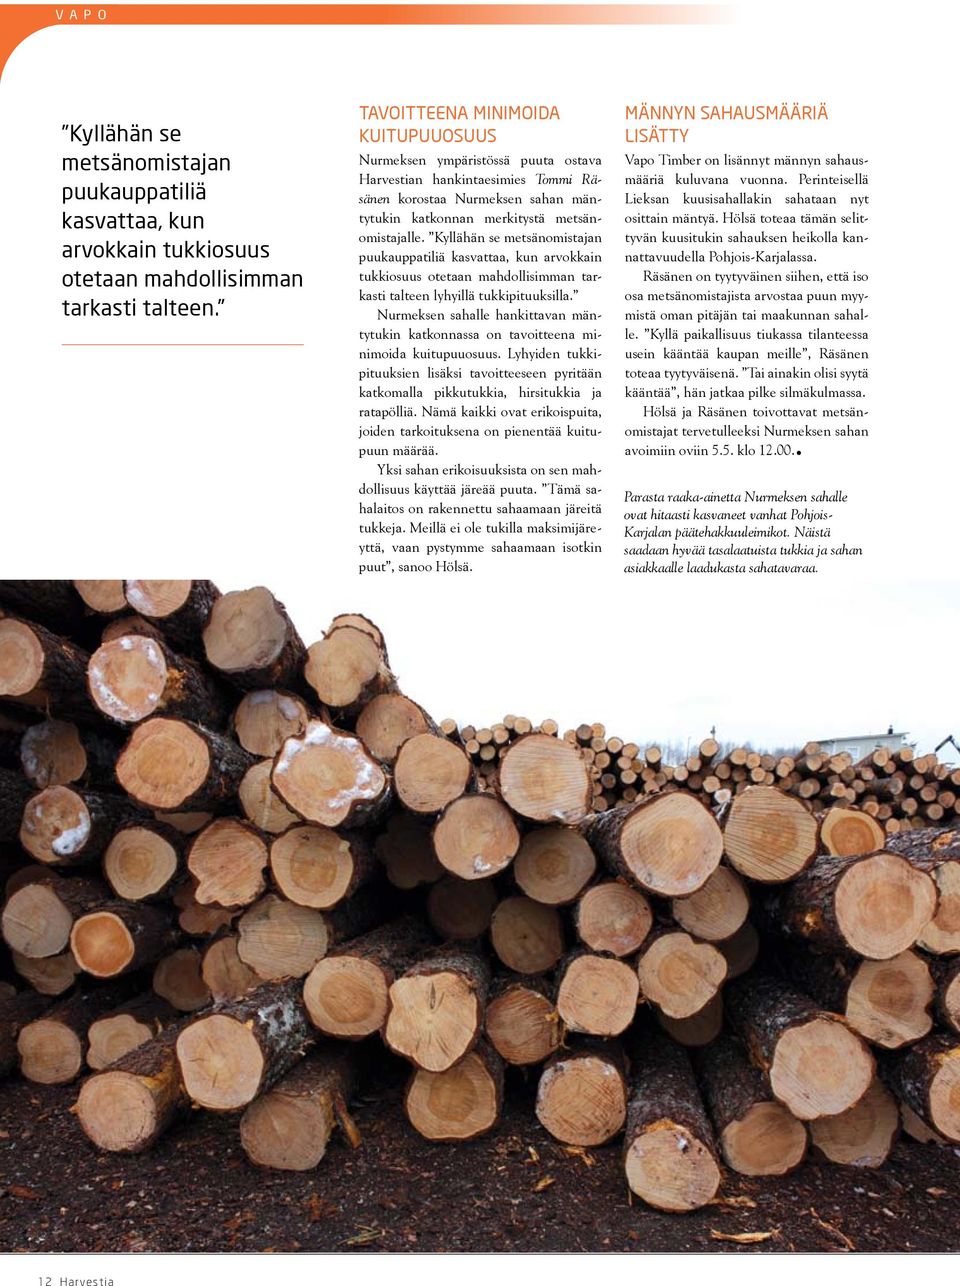 Kyllähän se metsänomistajan puukauppatiliä kasvattaa, kun arvokkain tukkiosuus otetaan mahdollisimman tarkasti talteen lyhyillä tukkipituuksilla.